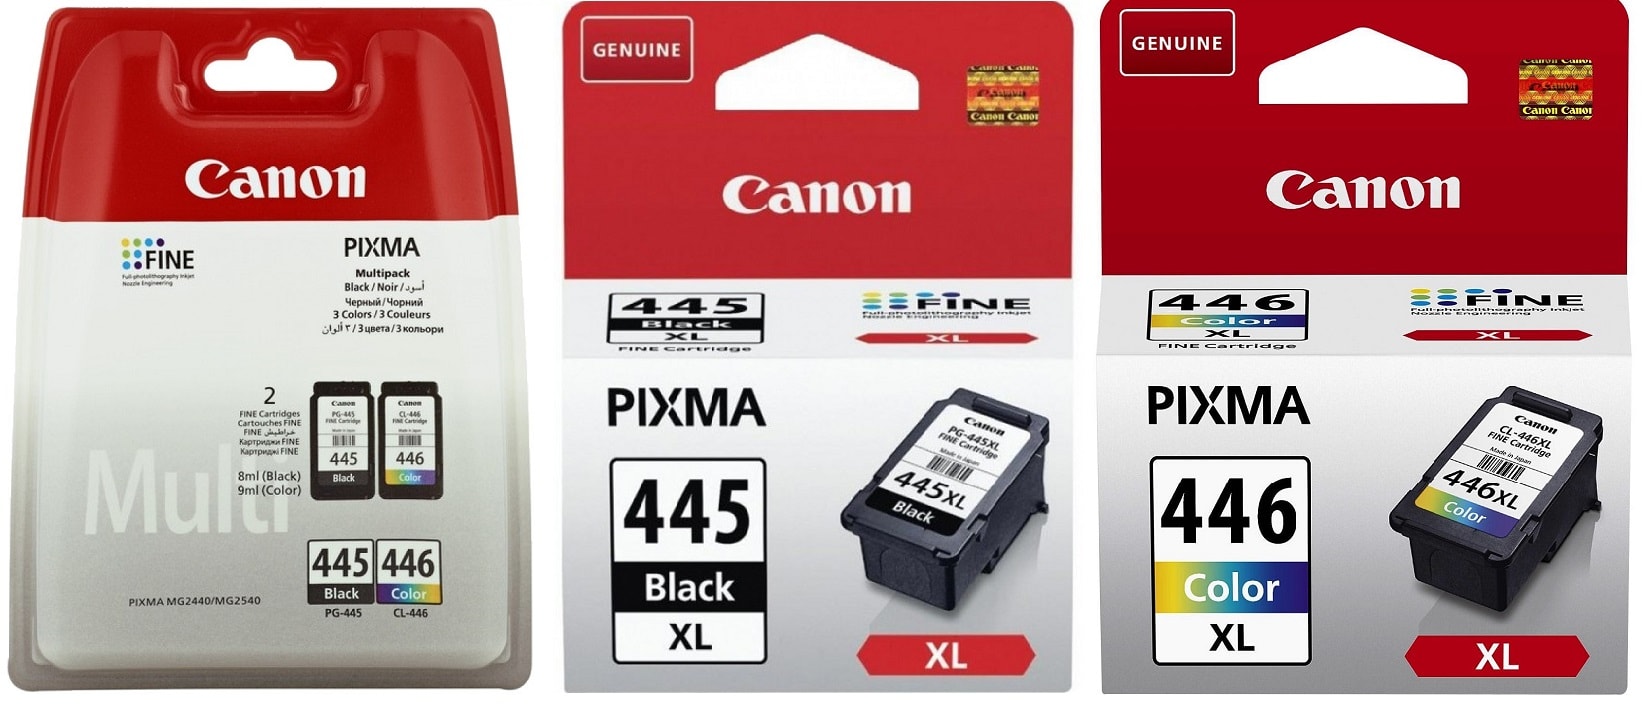 Чернила для Canon Pixma MG2440 Купить комплект оригинальных чернил.